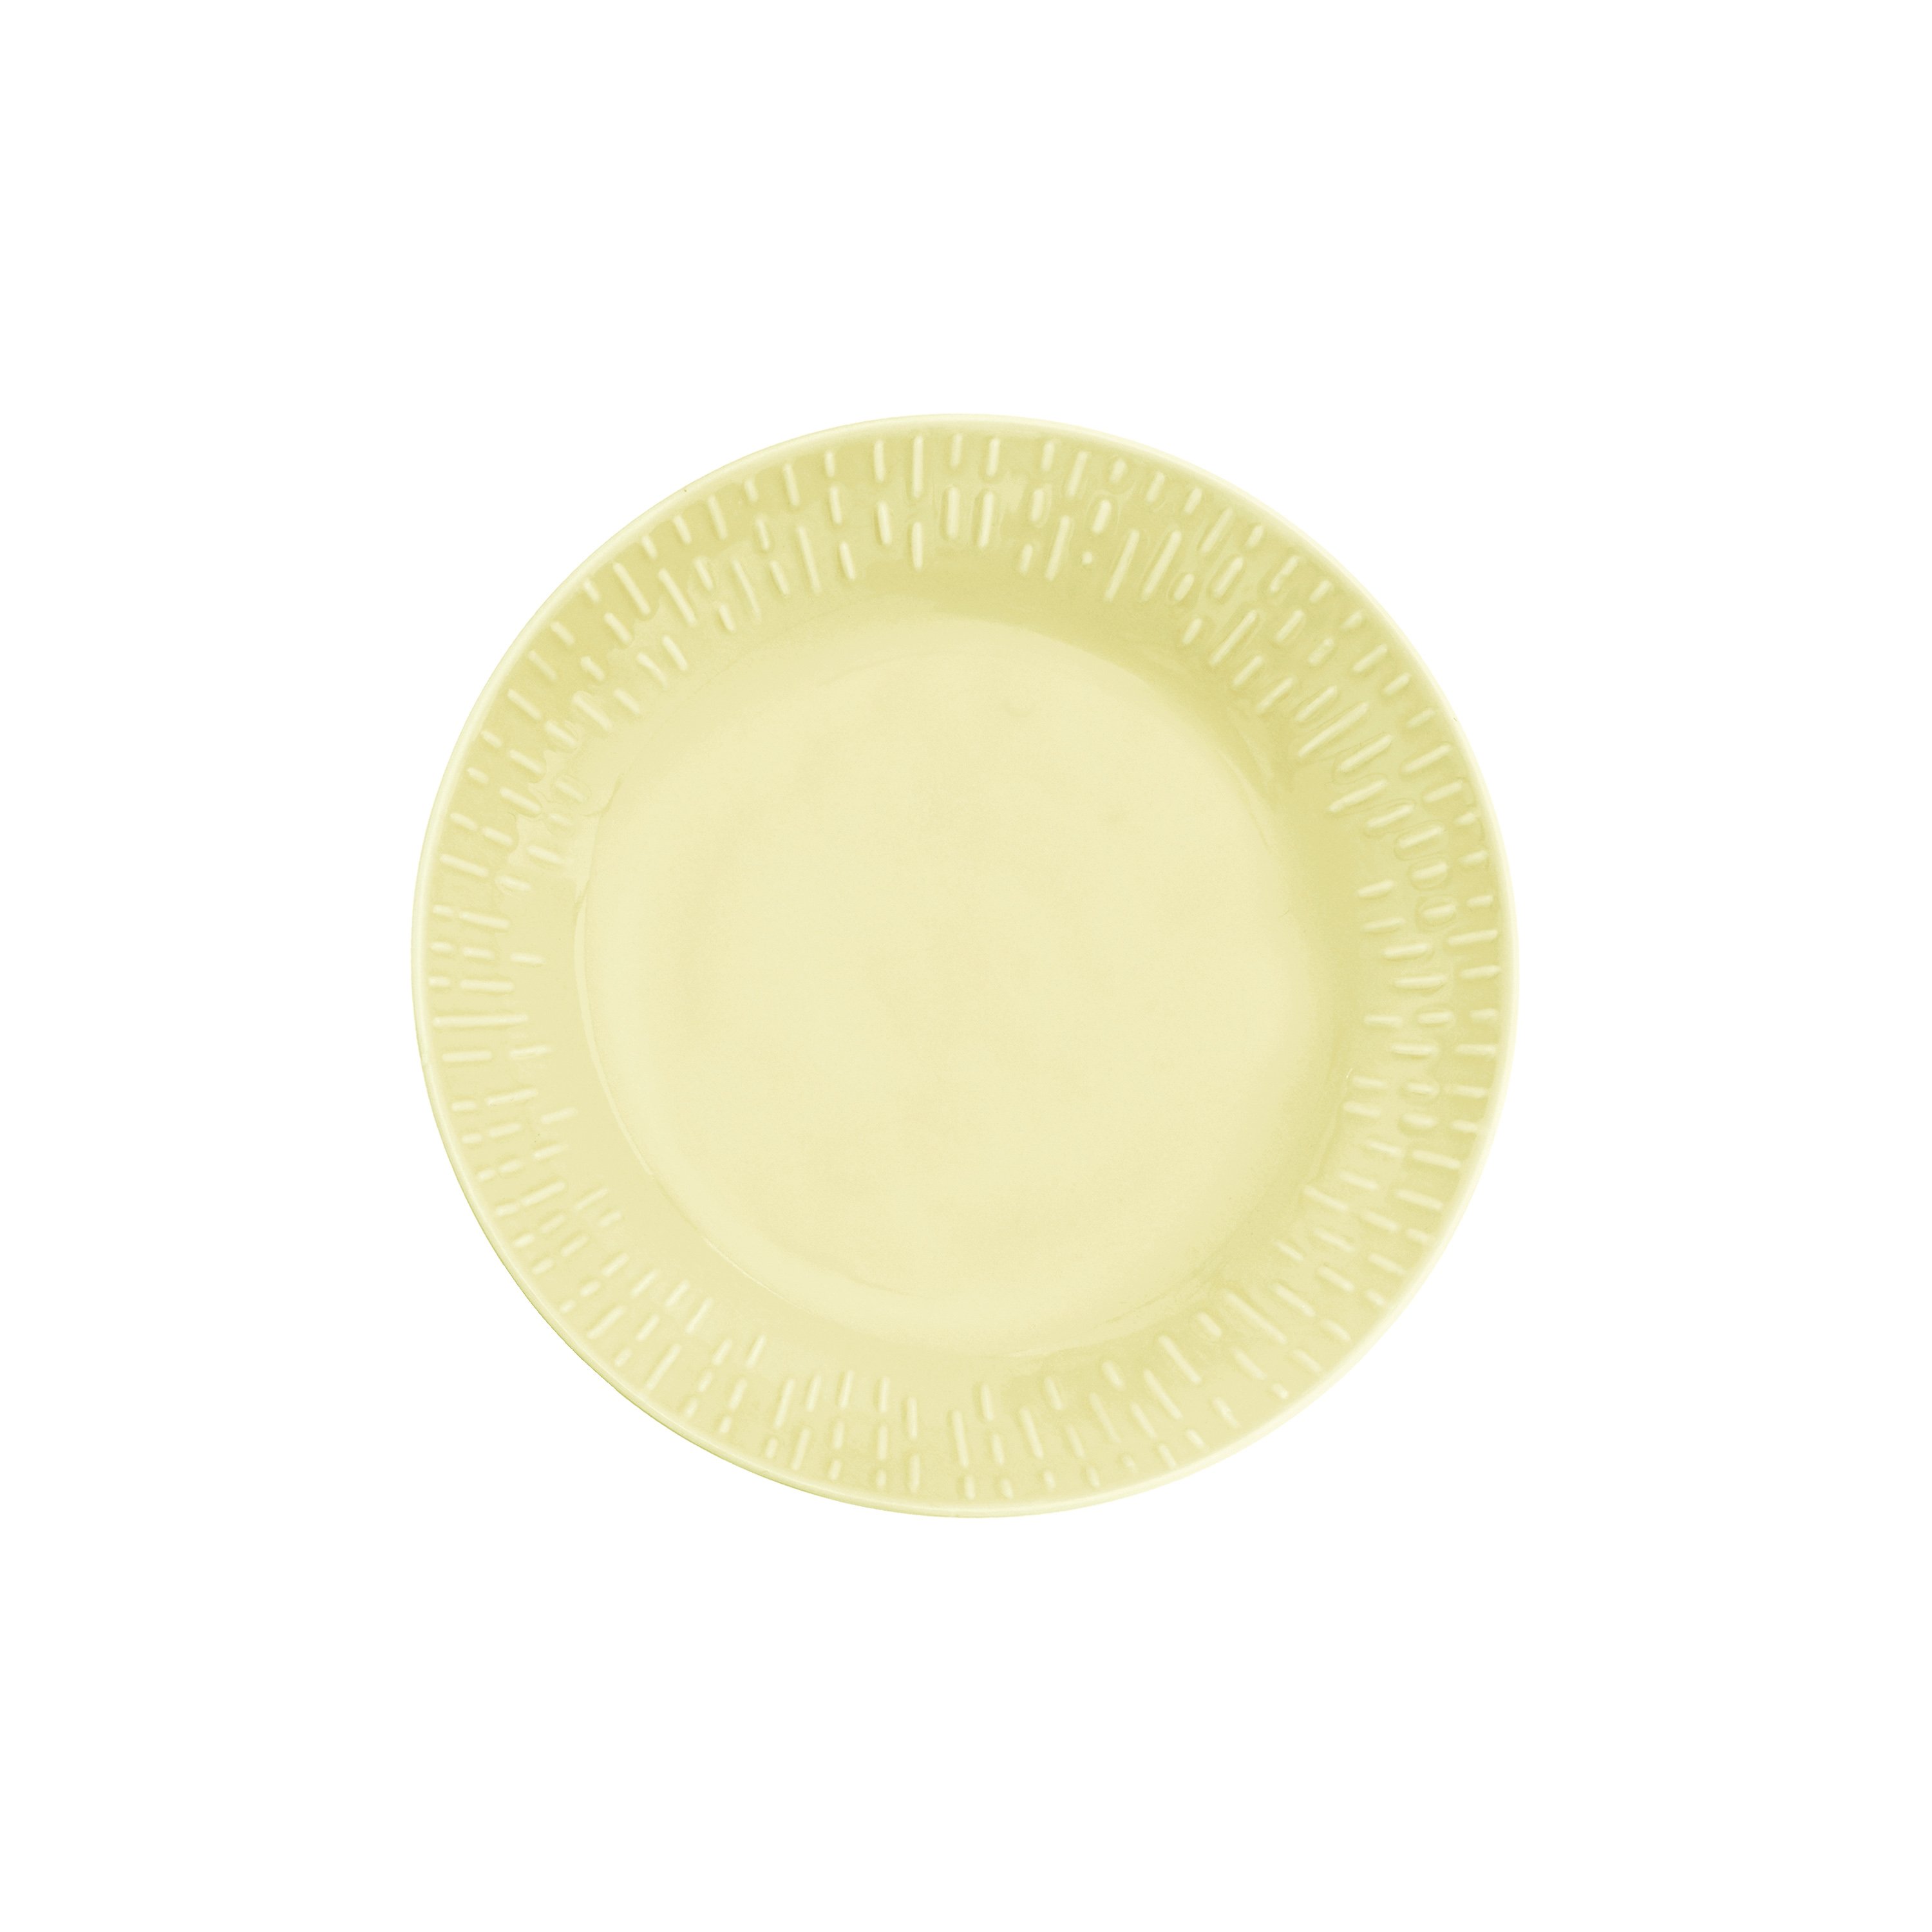 Aida - Life in Colour - Confetti - Lemon pasta tall. m/relief procelæn (13304)